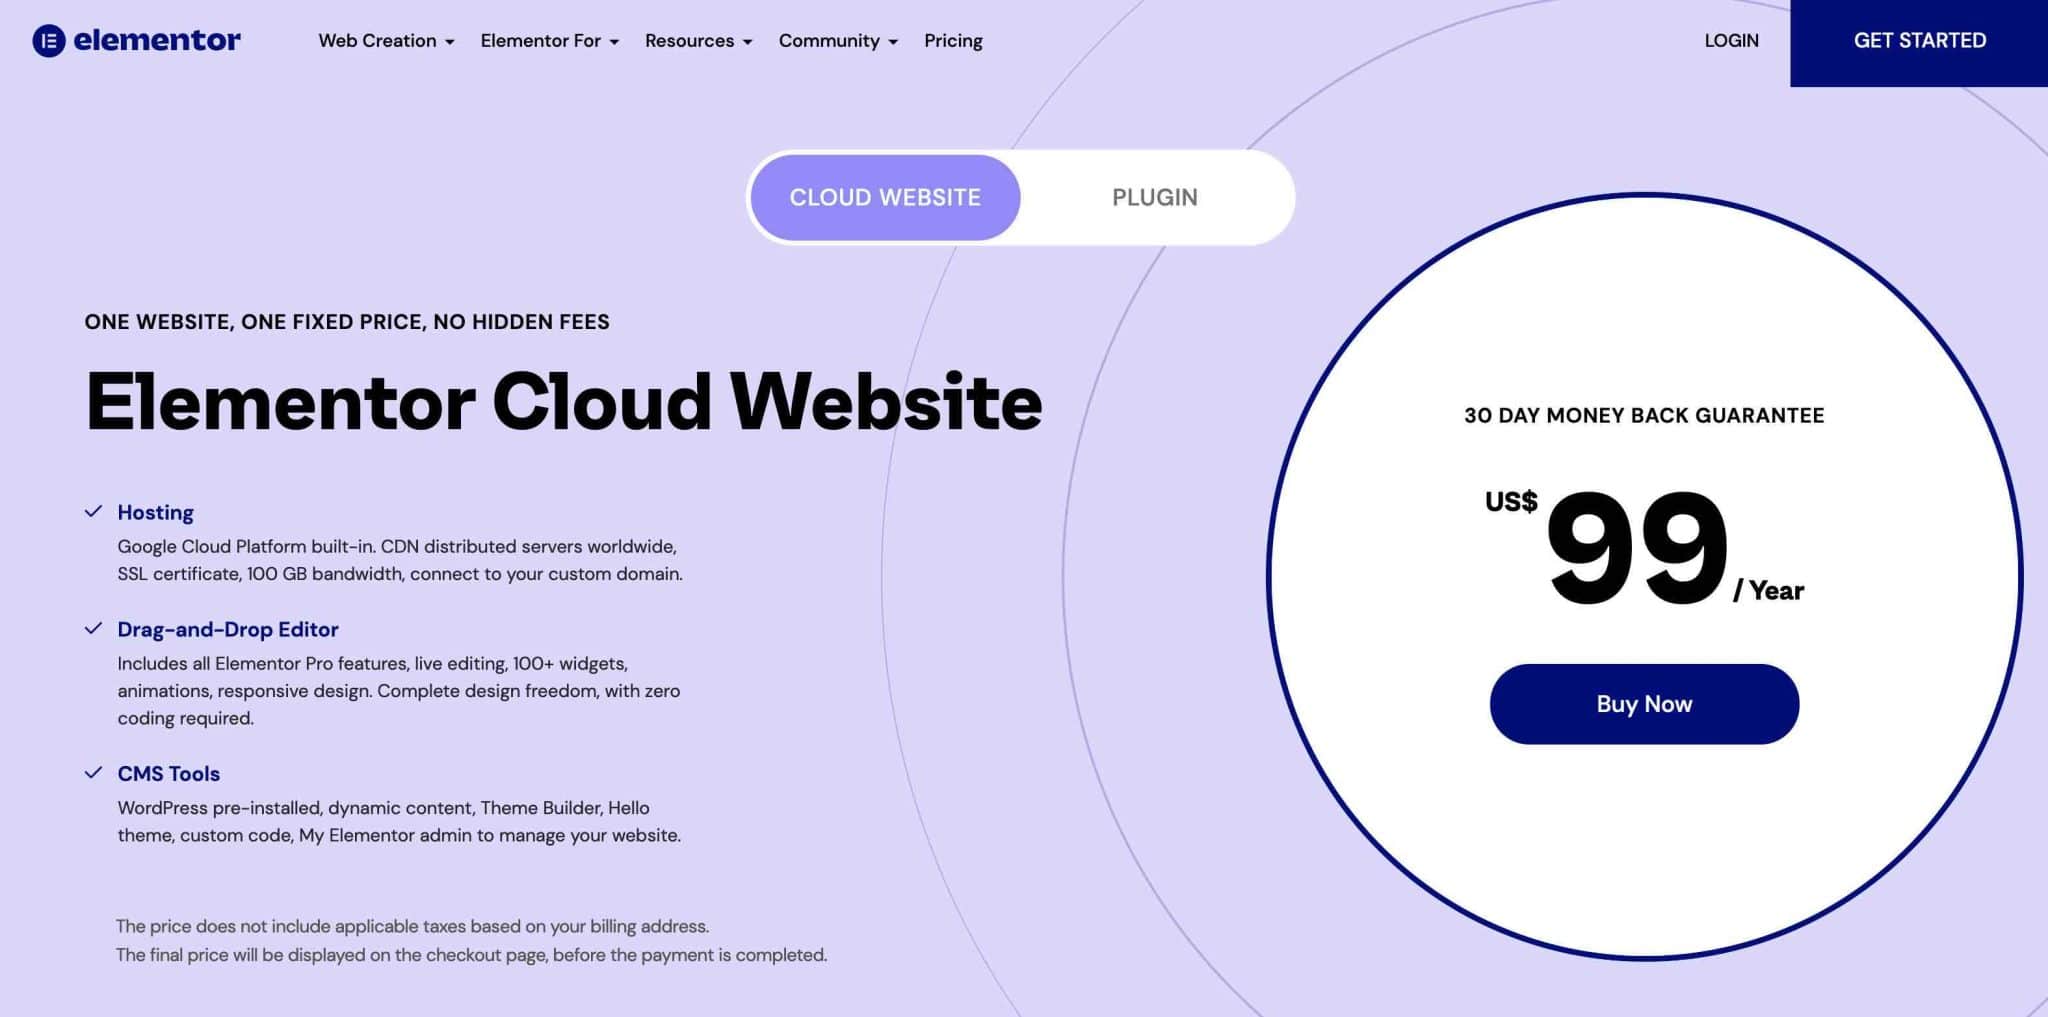 The Elementor Cloud Website homepage.